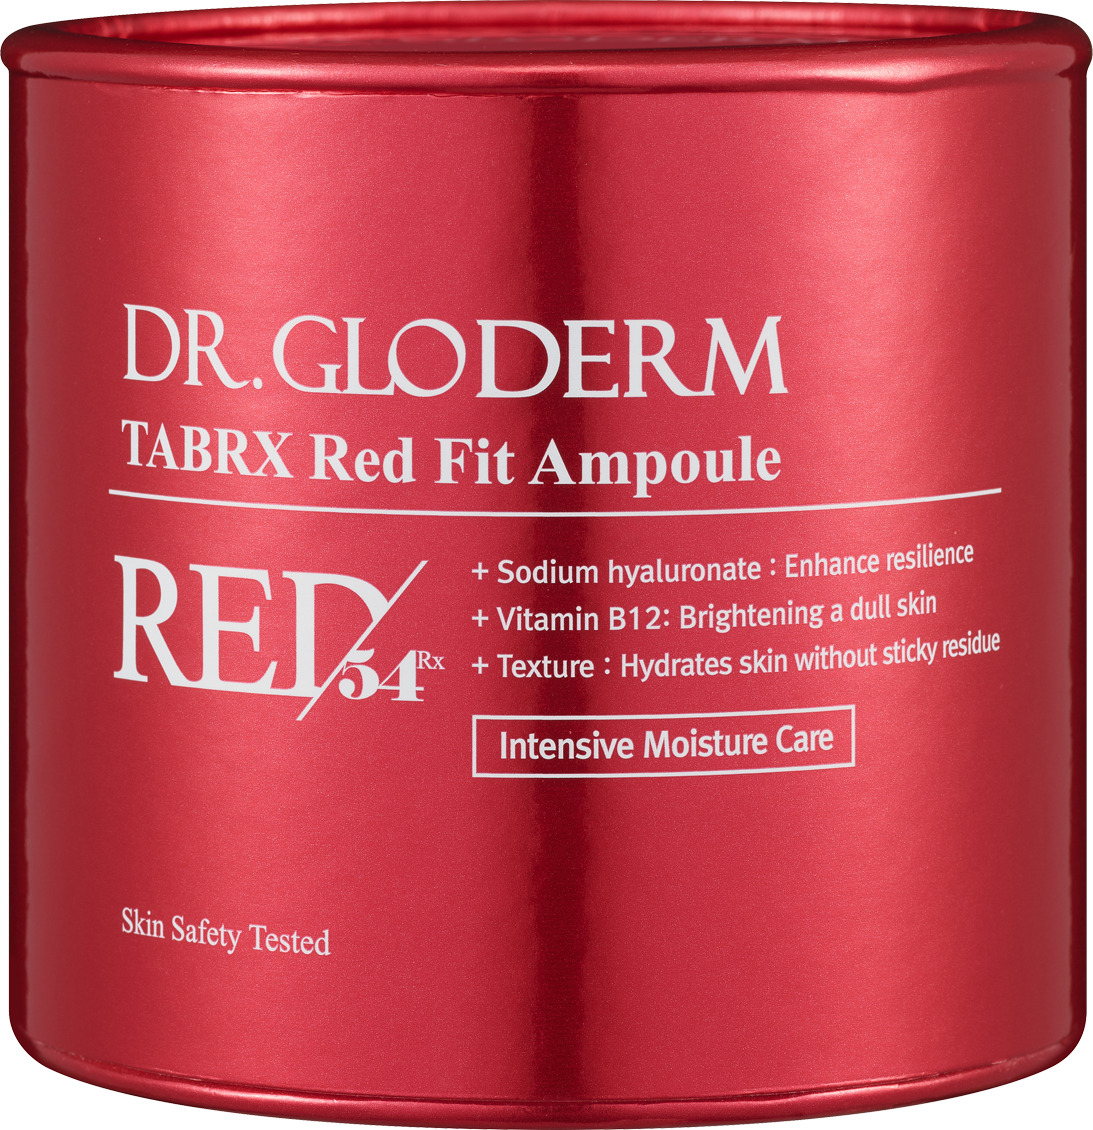 Картинка Ампульная эссенция для лица TabRX Red Fit Dr.Gloderm, 10 штук по 2 мл BeautyConceptPro